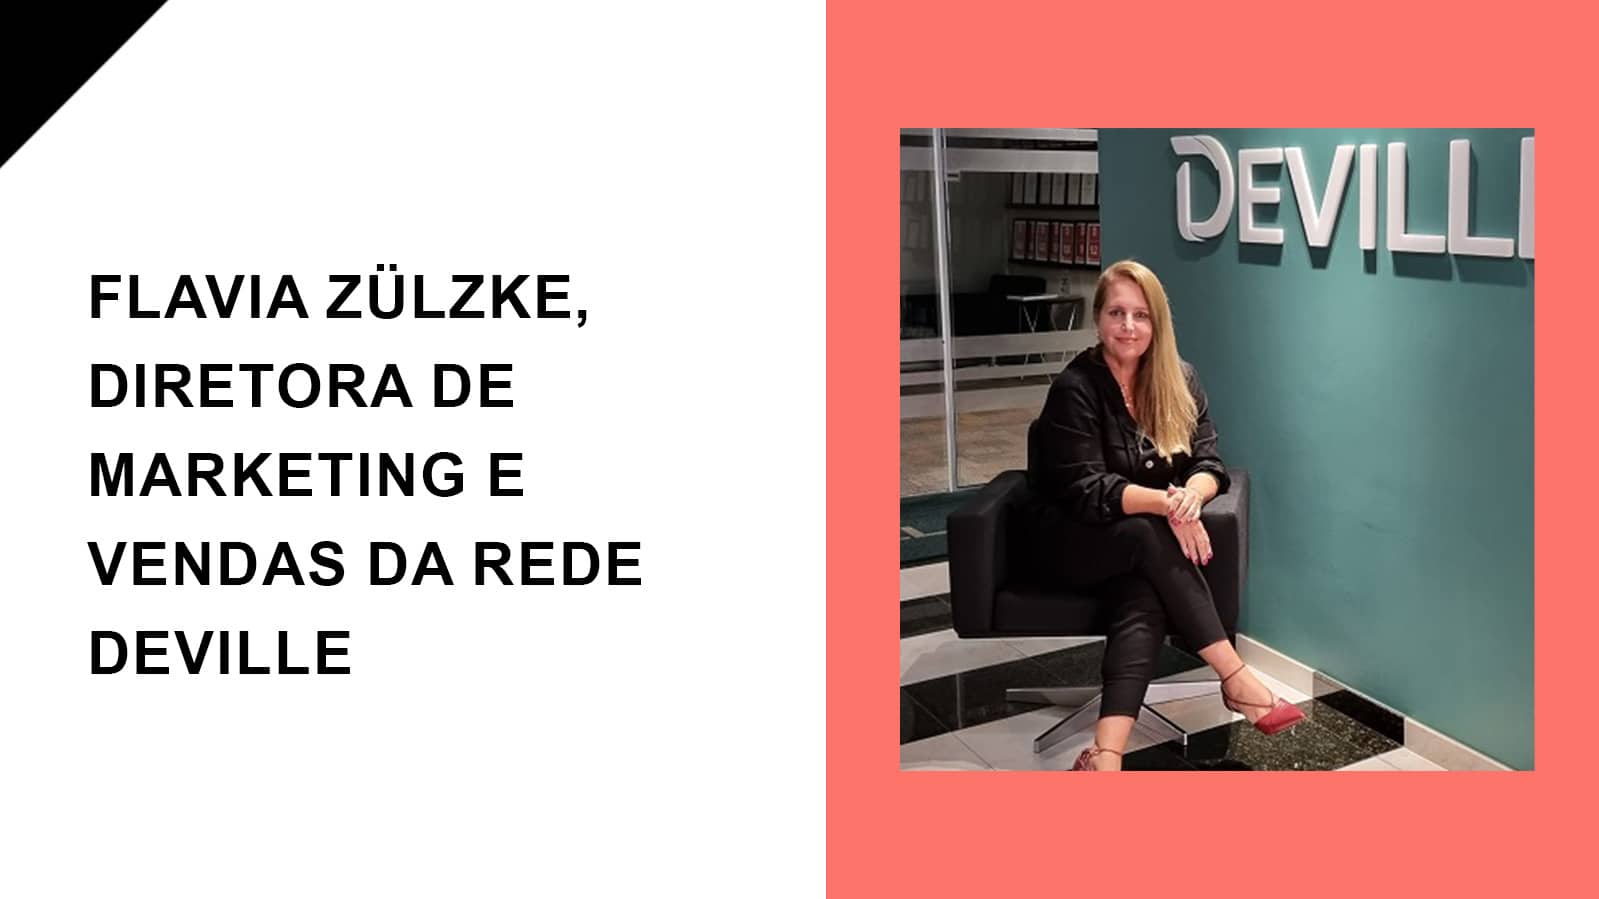 Raul entrevista Flavia Zülzke, Diretora de Marketing e Vendas da Rede Deville